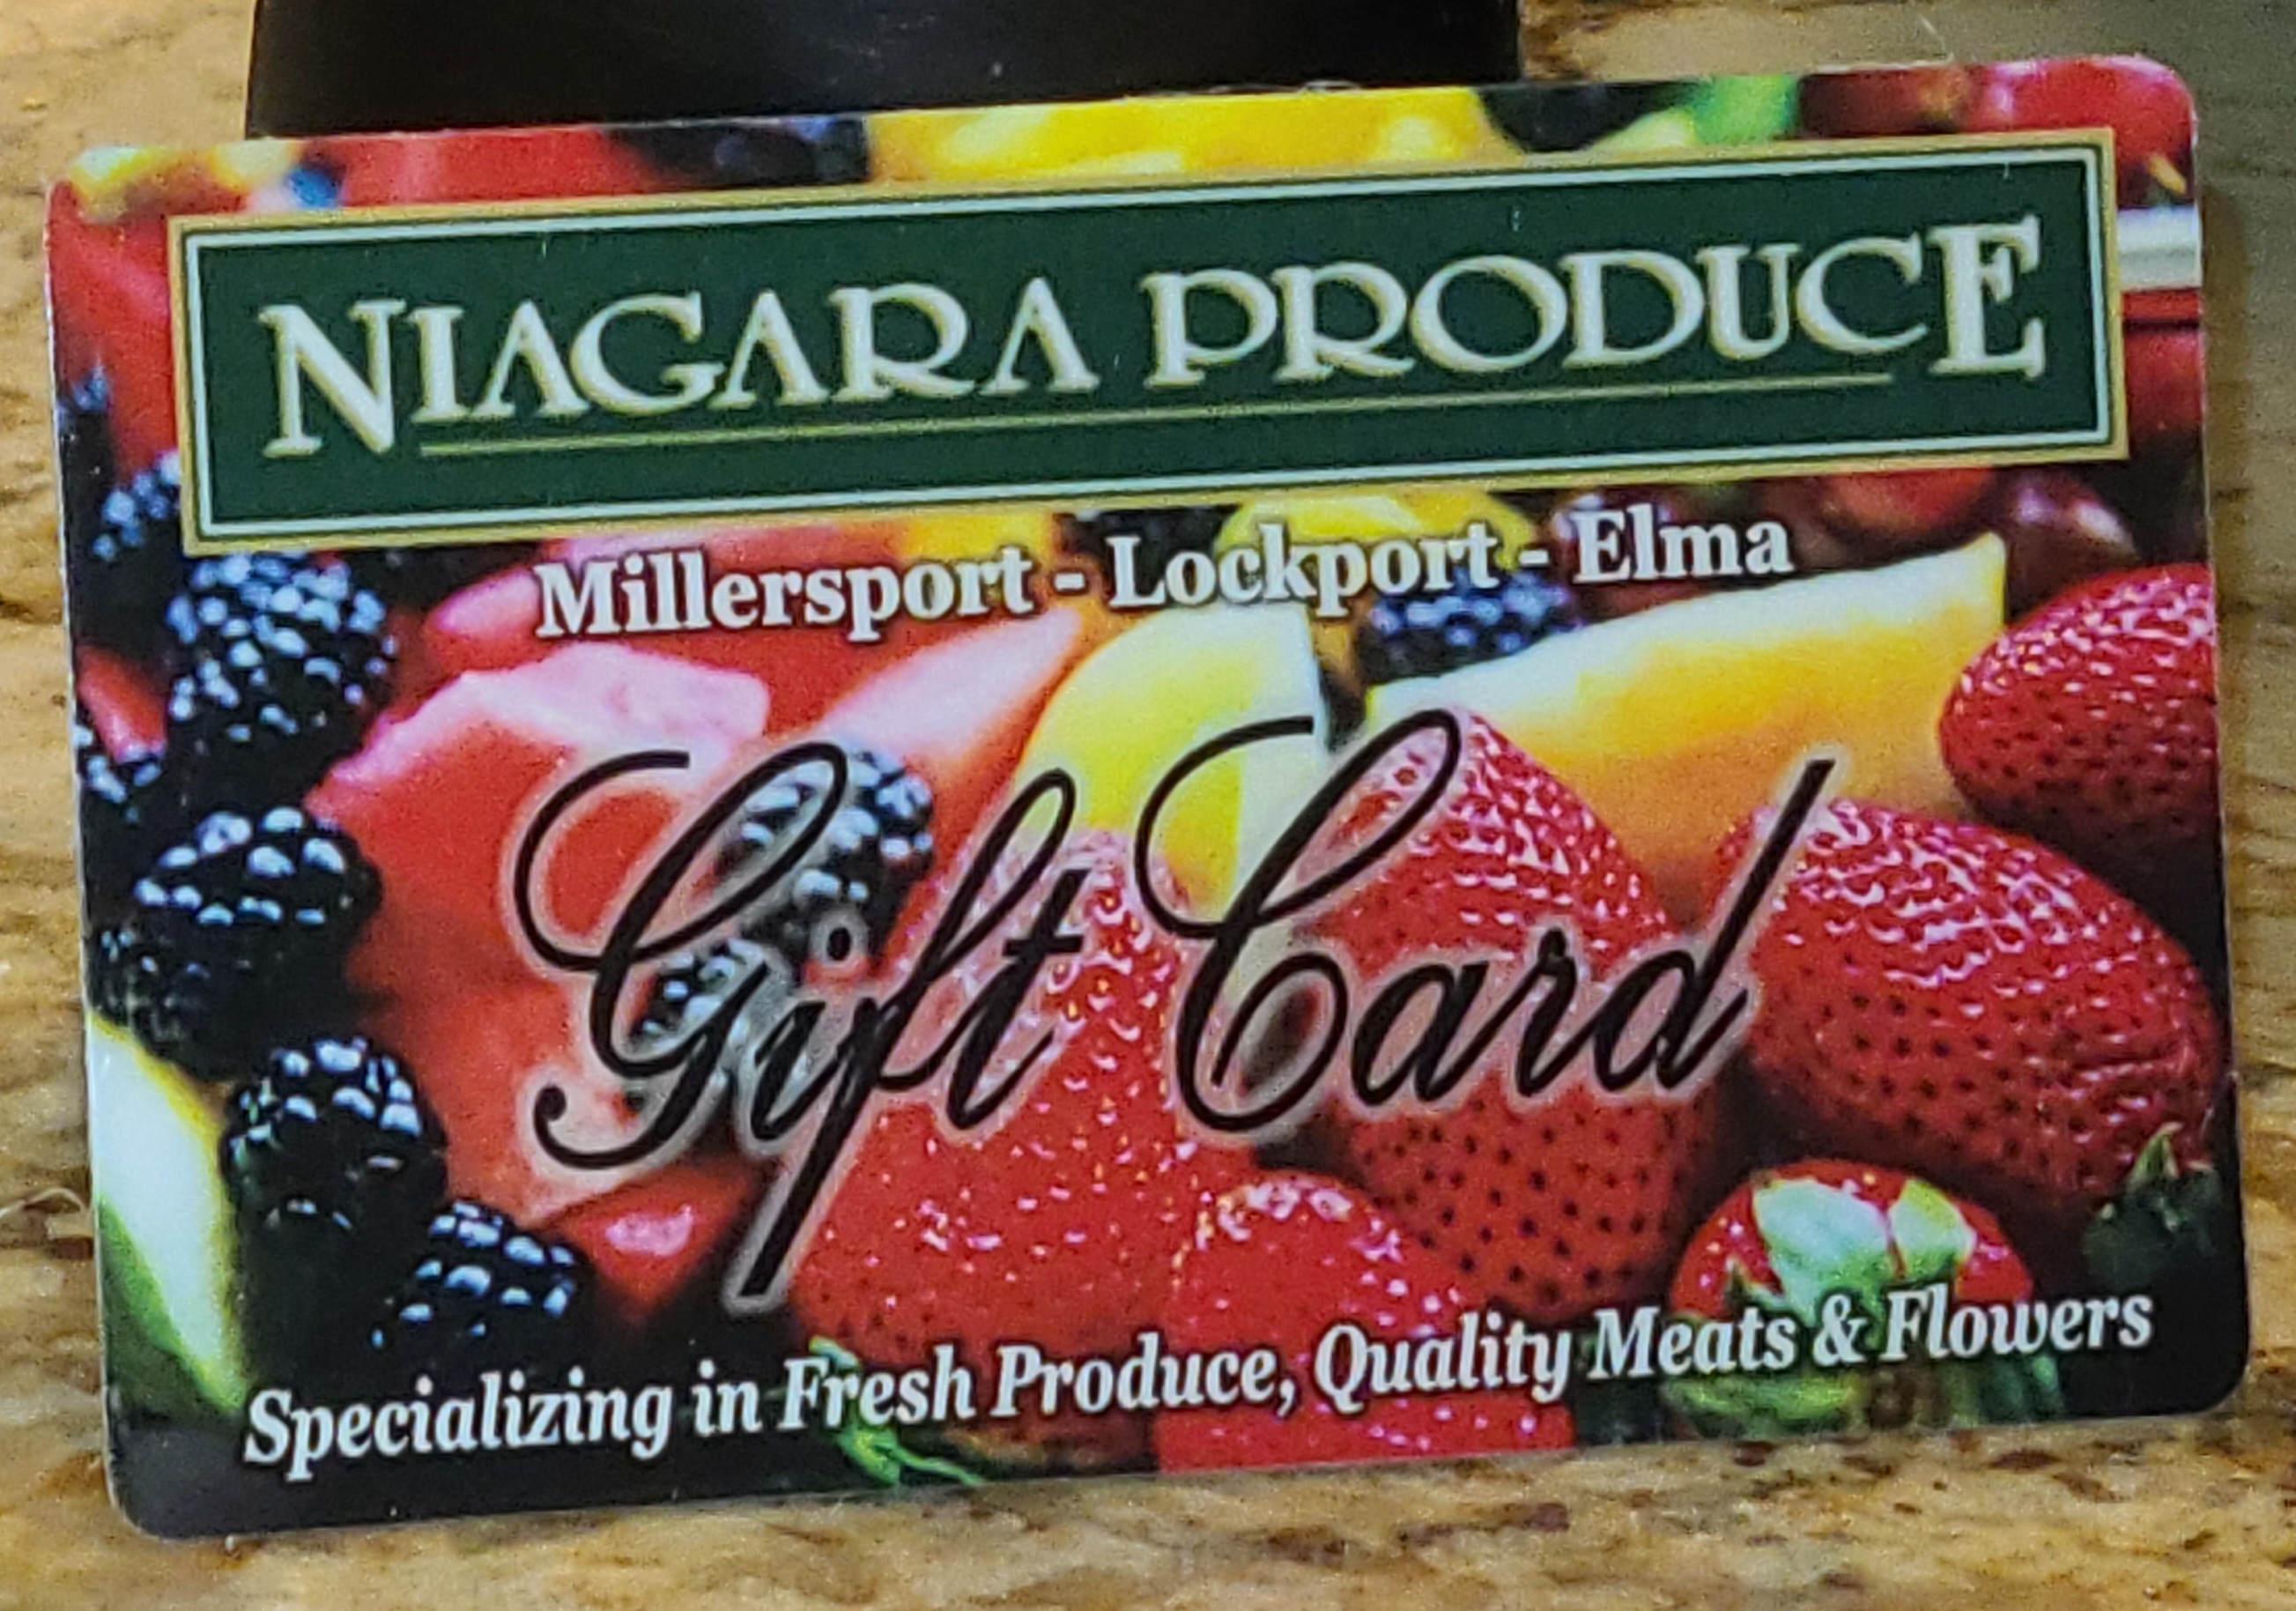 Niagara Produce - Niagara Produce